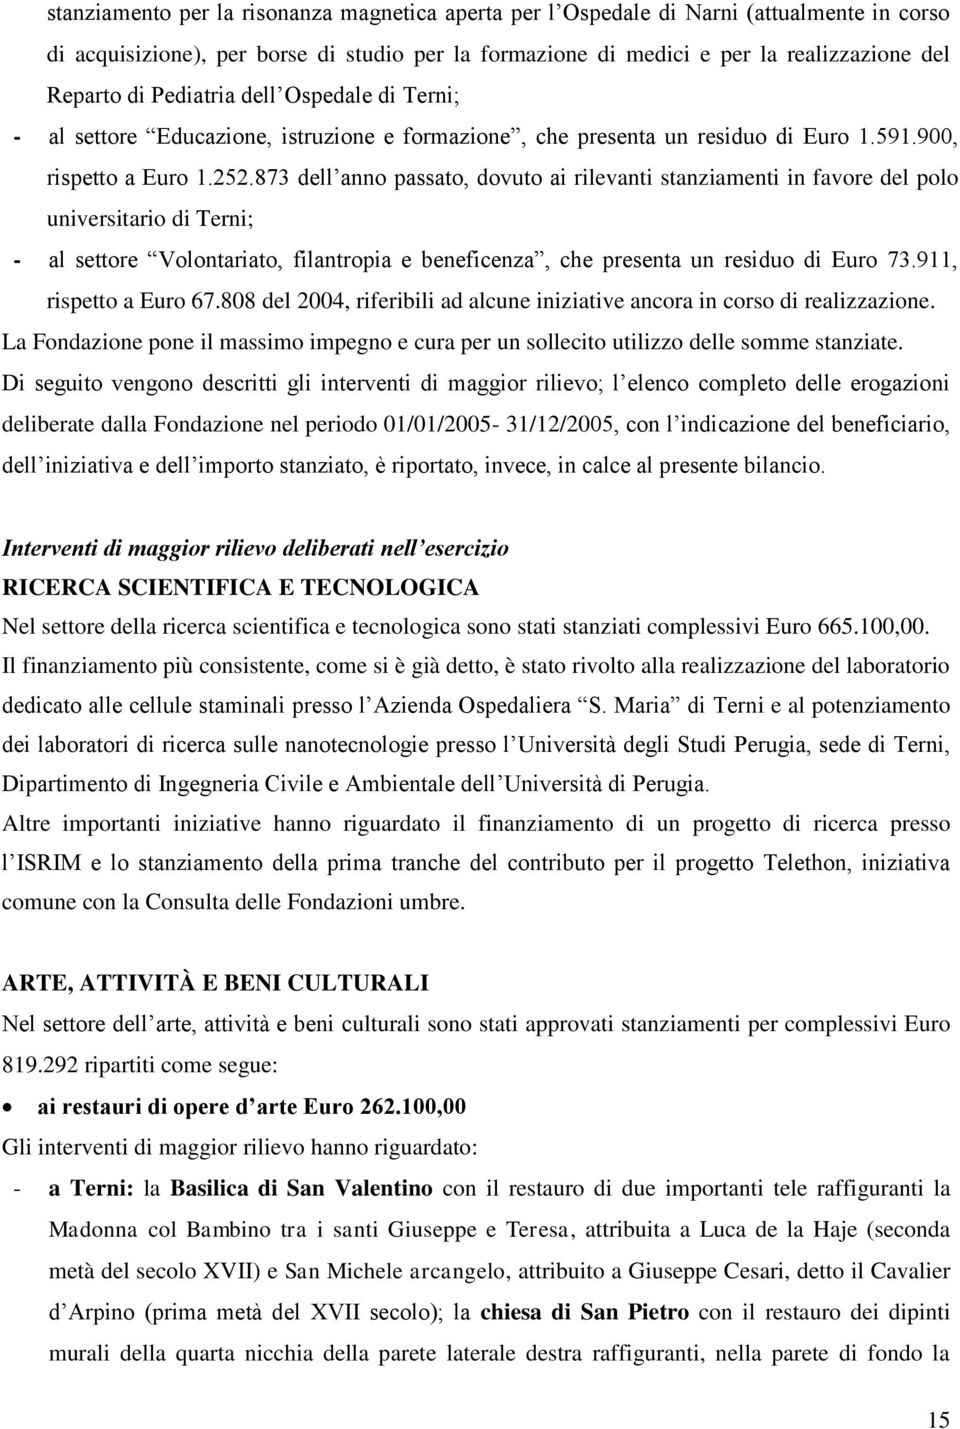 873 dell anno passato, dovuto ai rilevanti stanziamenti in favore del polo universitario di Terni; - al settore Volontariato, filantropia e beneficenza, che presenta un residuo di Euro 73.